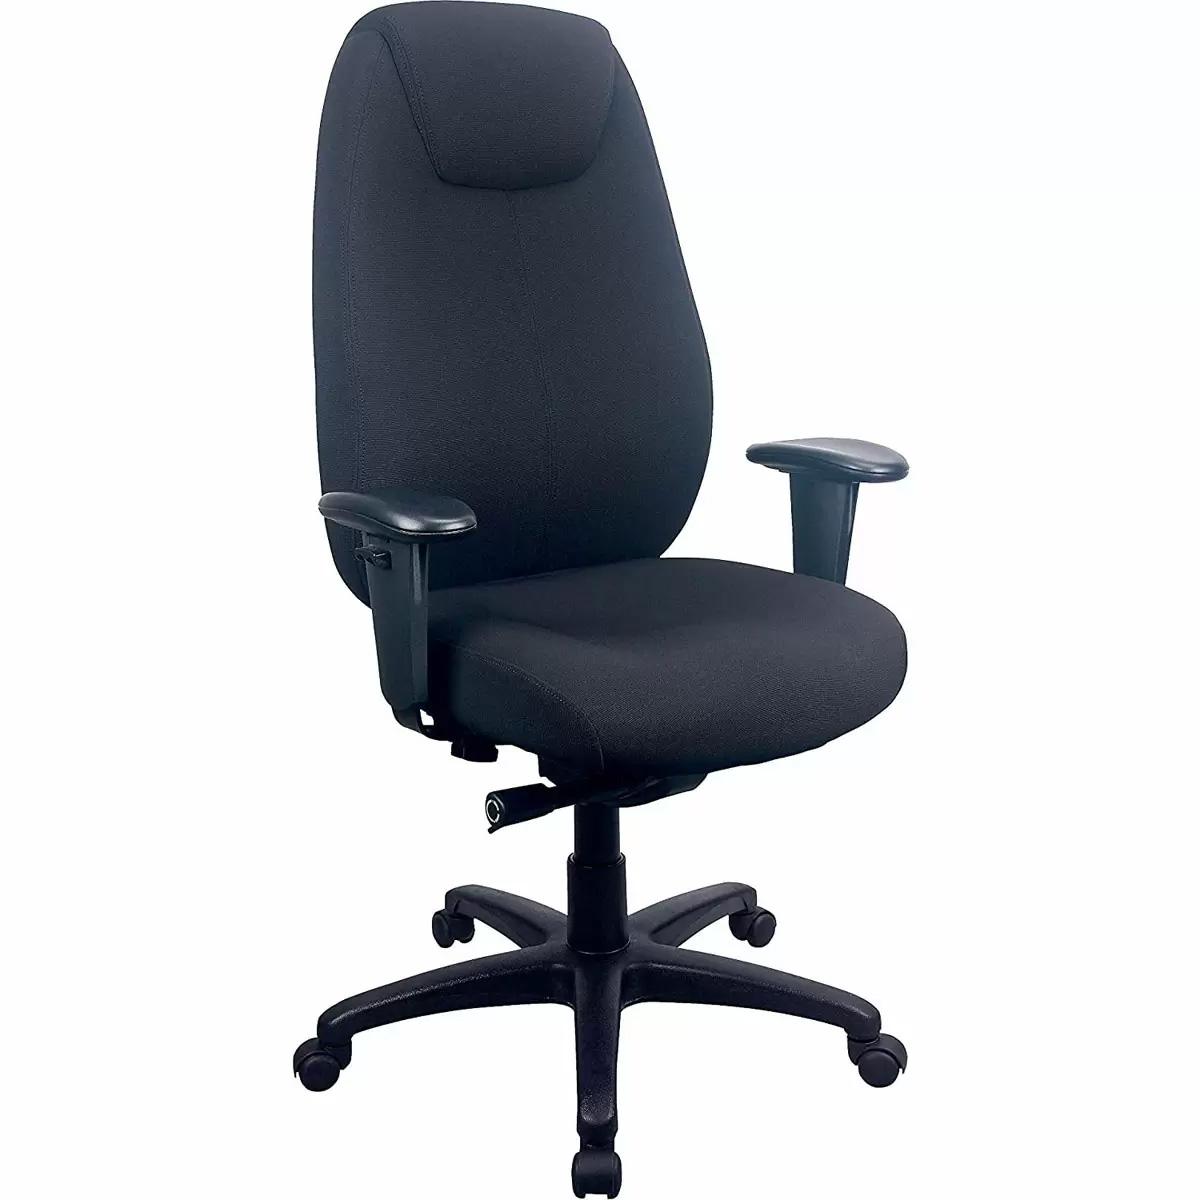 Tempur-Pedic 6400 Fabric Desk Chair Deals